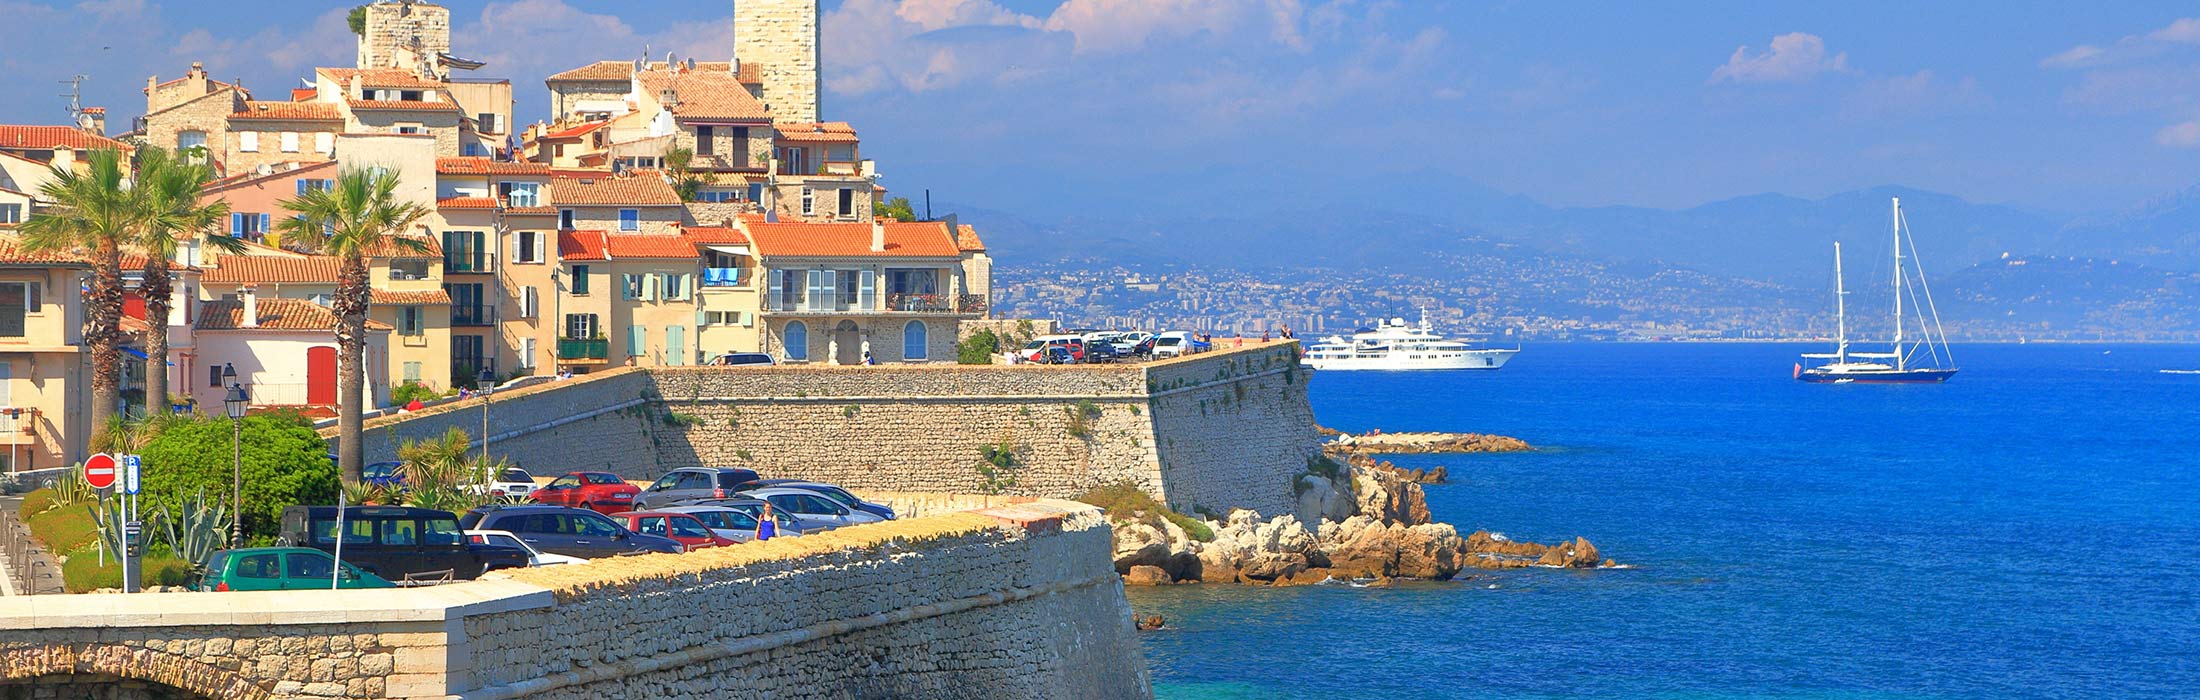 top yacht charter destinations mediterranean french riviera antibes main slider 2